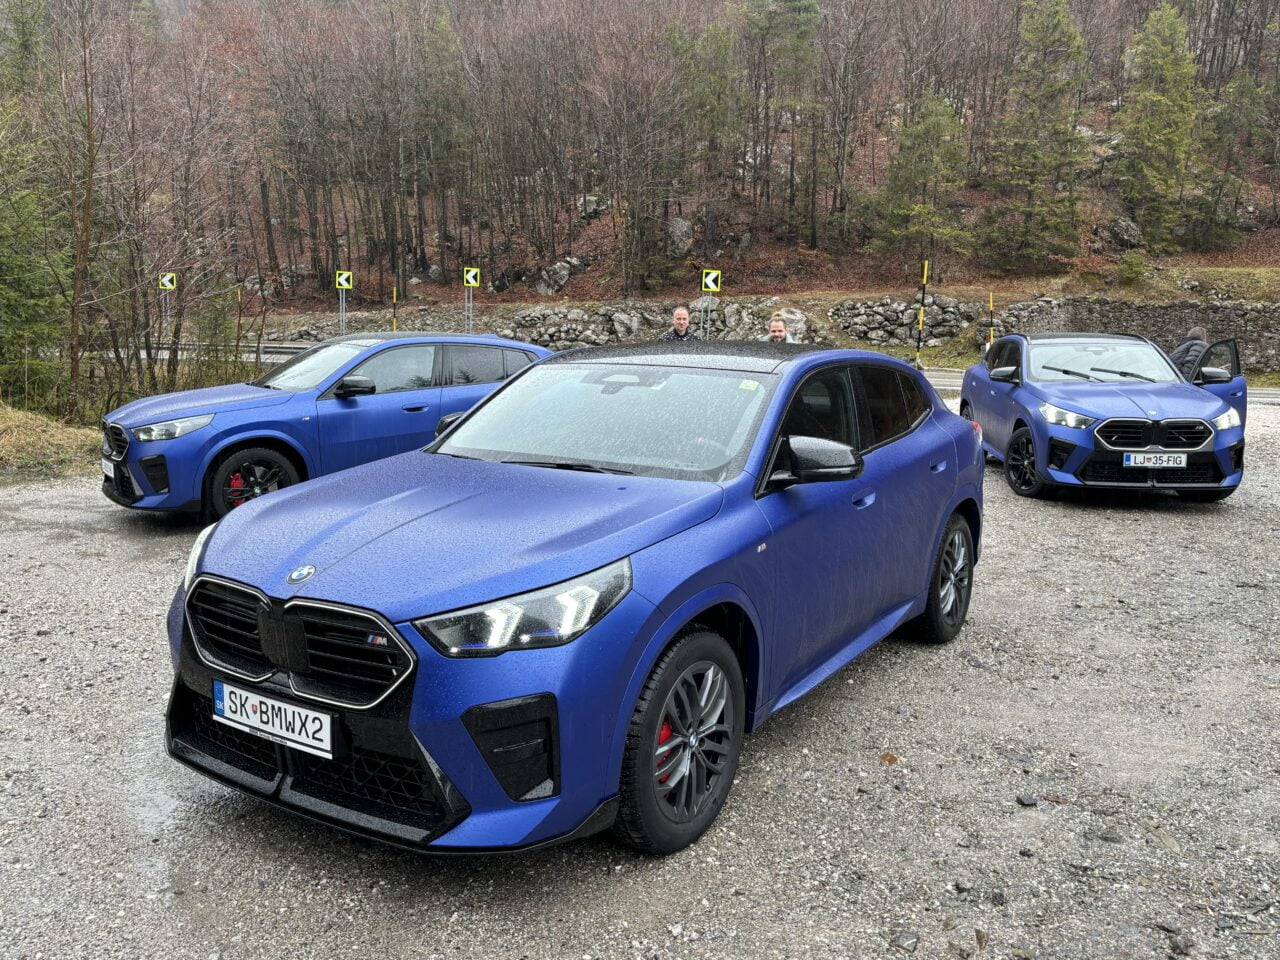 Trzy niebieskie samochody SUV zaparkowane jeden za drugim na żwirowym parkingu z drzewami w tle i dwoma osobami stojącymi przy najdalszym pojeździe.